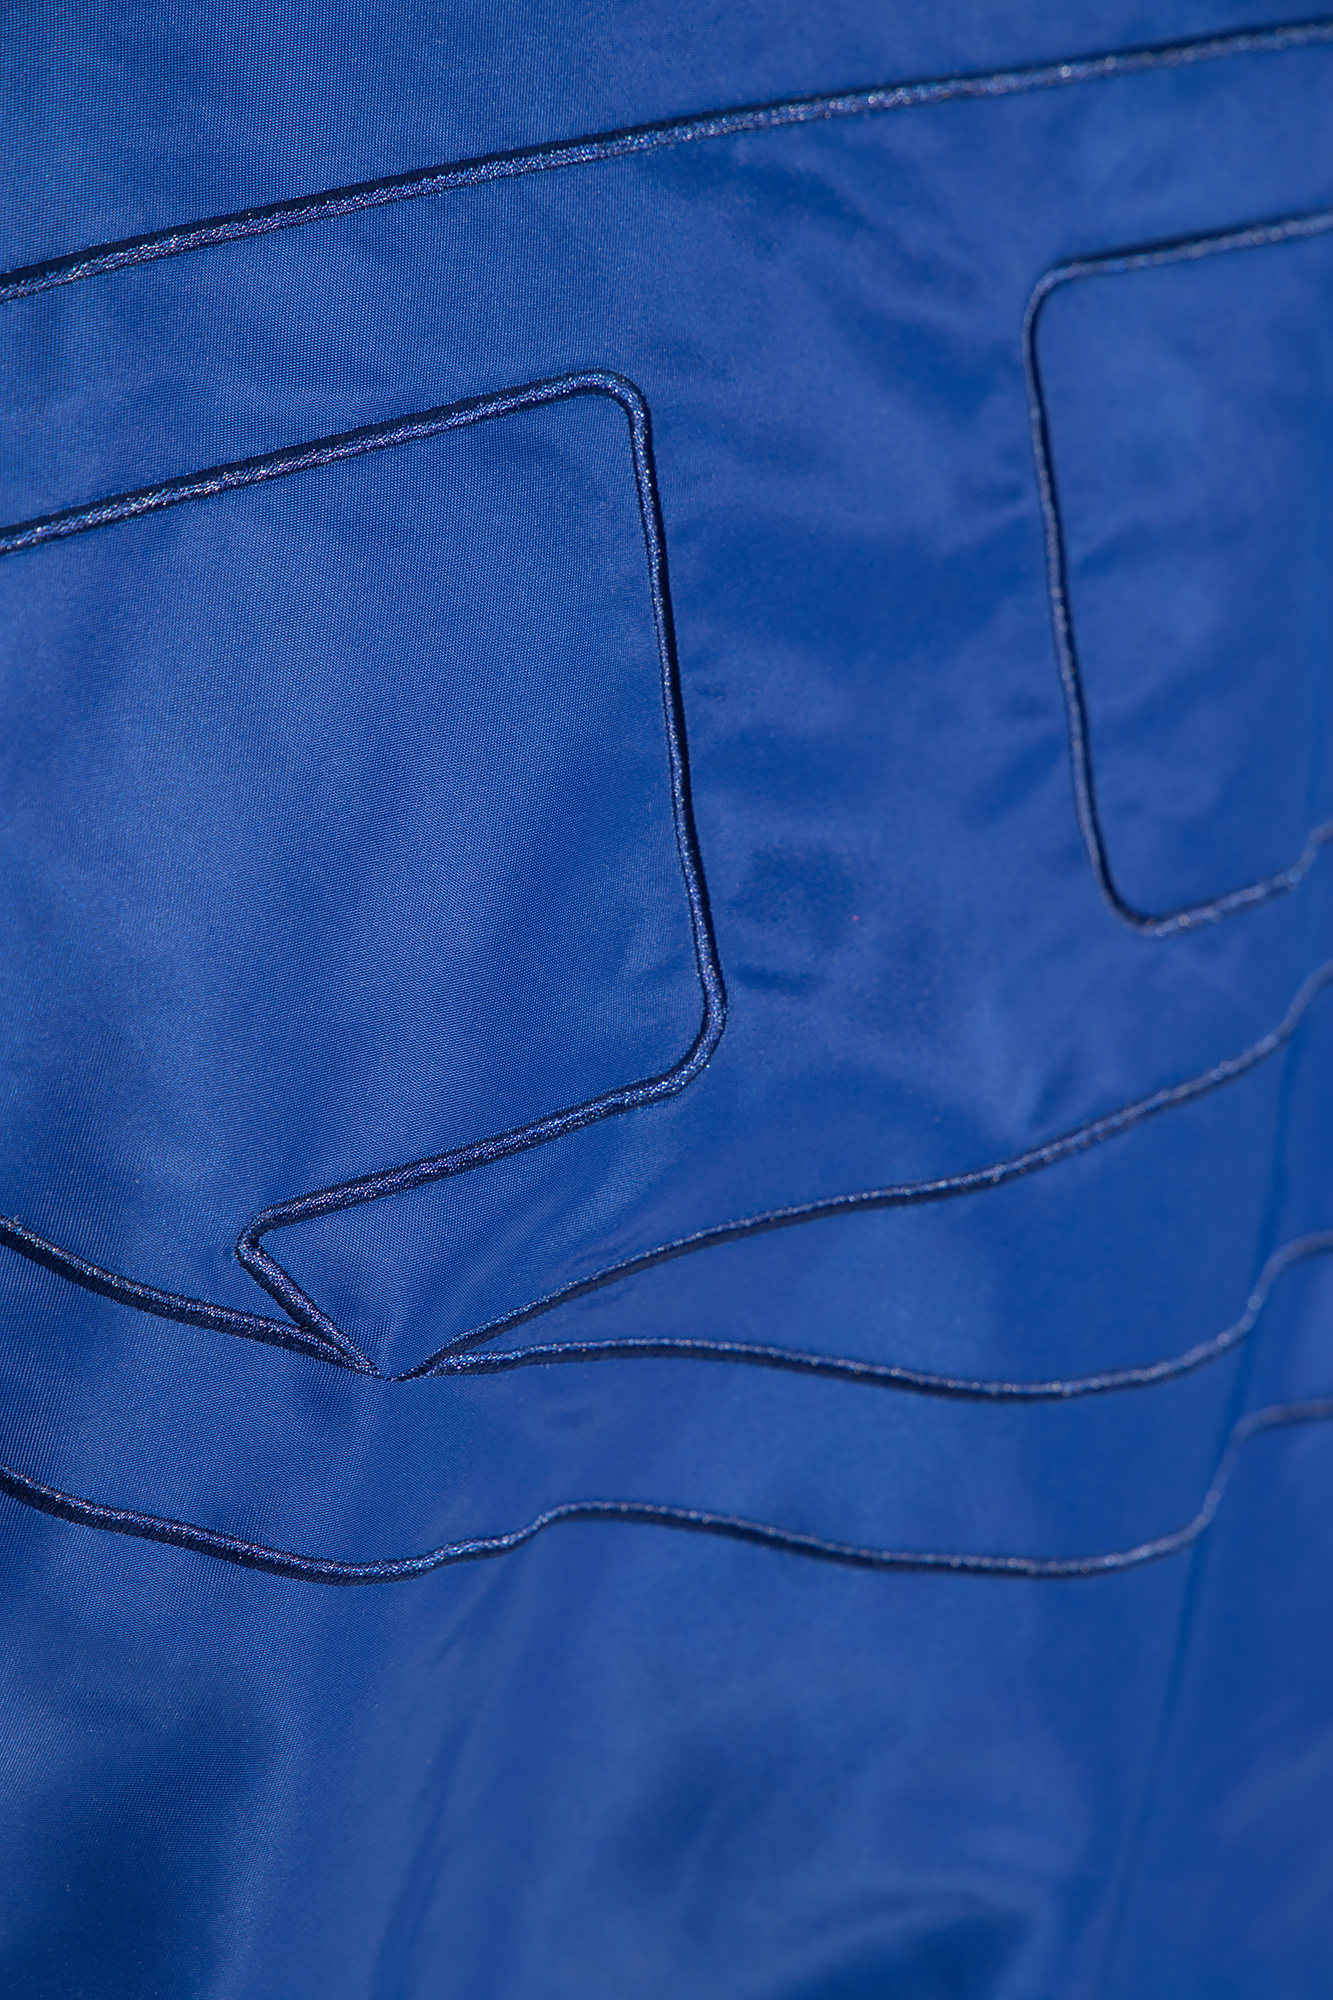 REVERSIBLE BLUE AND WHITE JACKET PRÉCOMMANDE – Talpa marque de vêtements  française